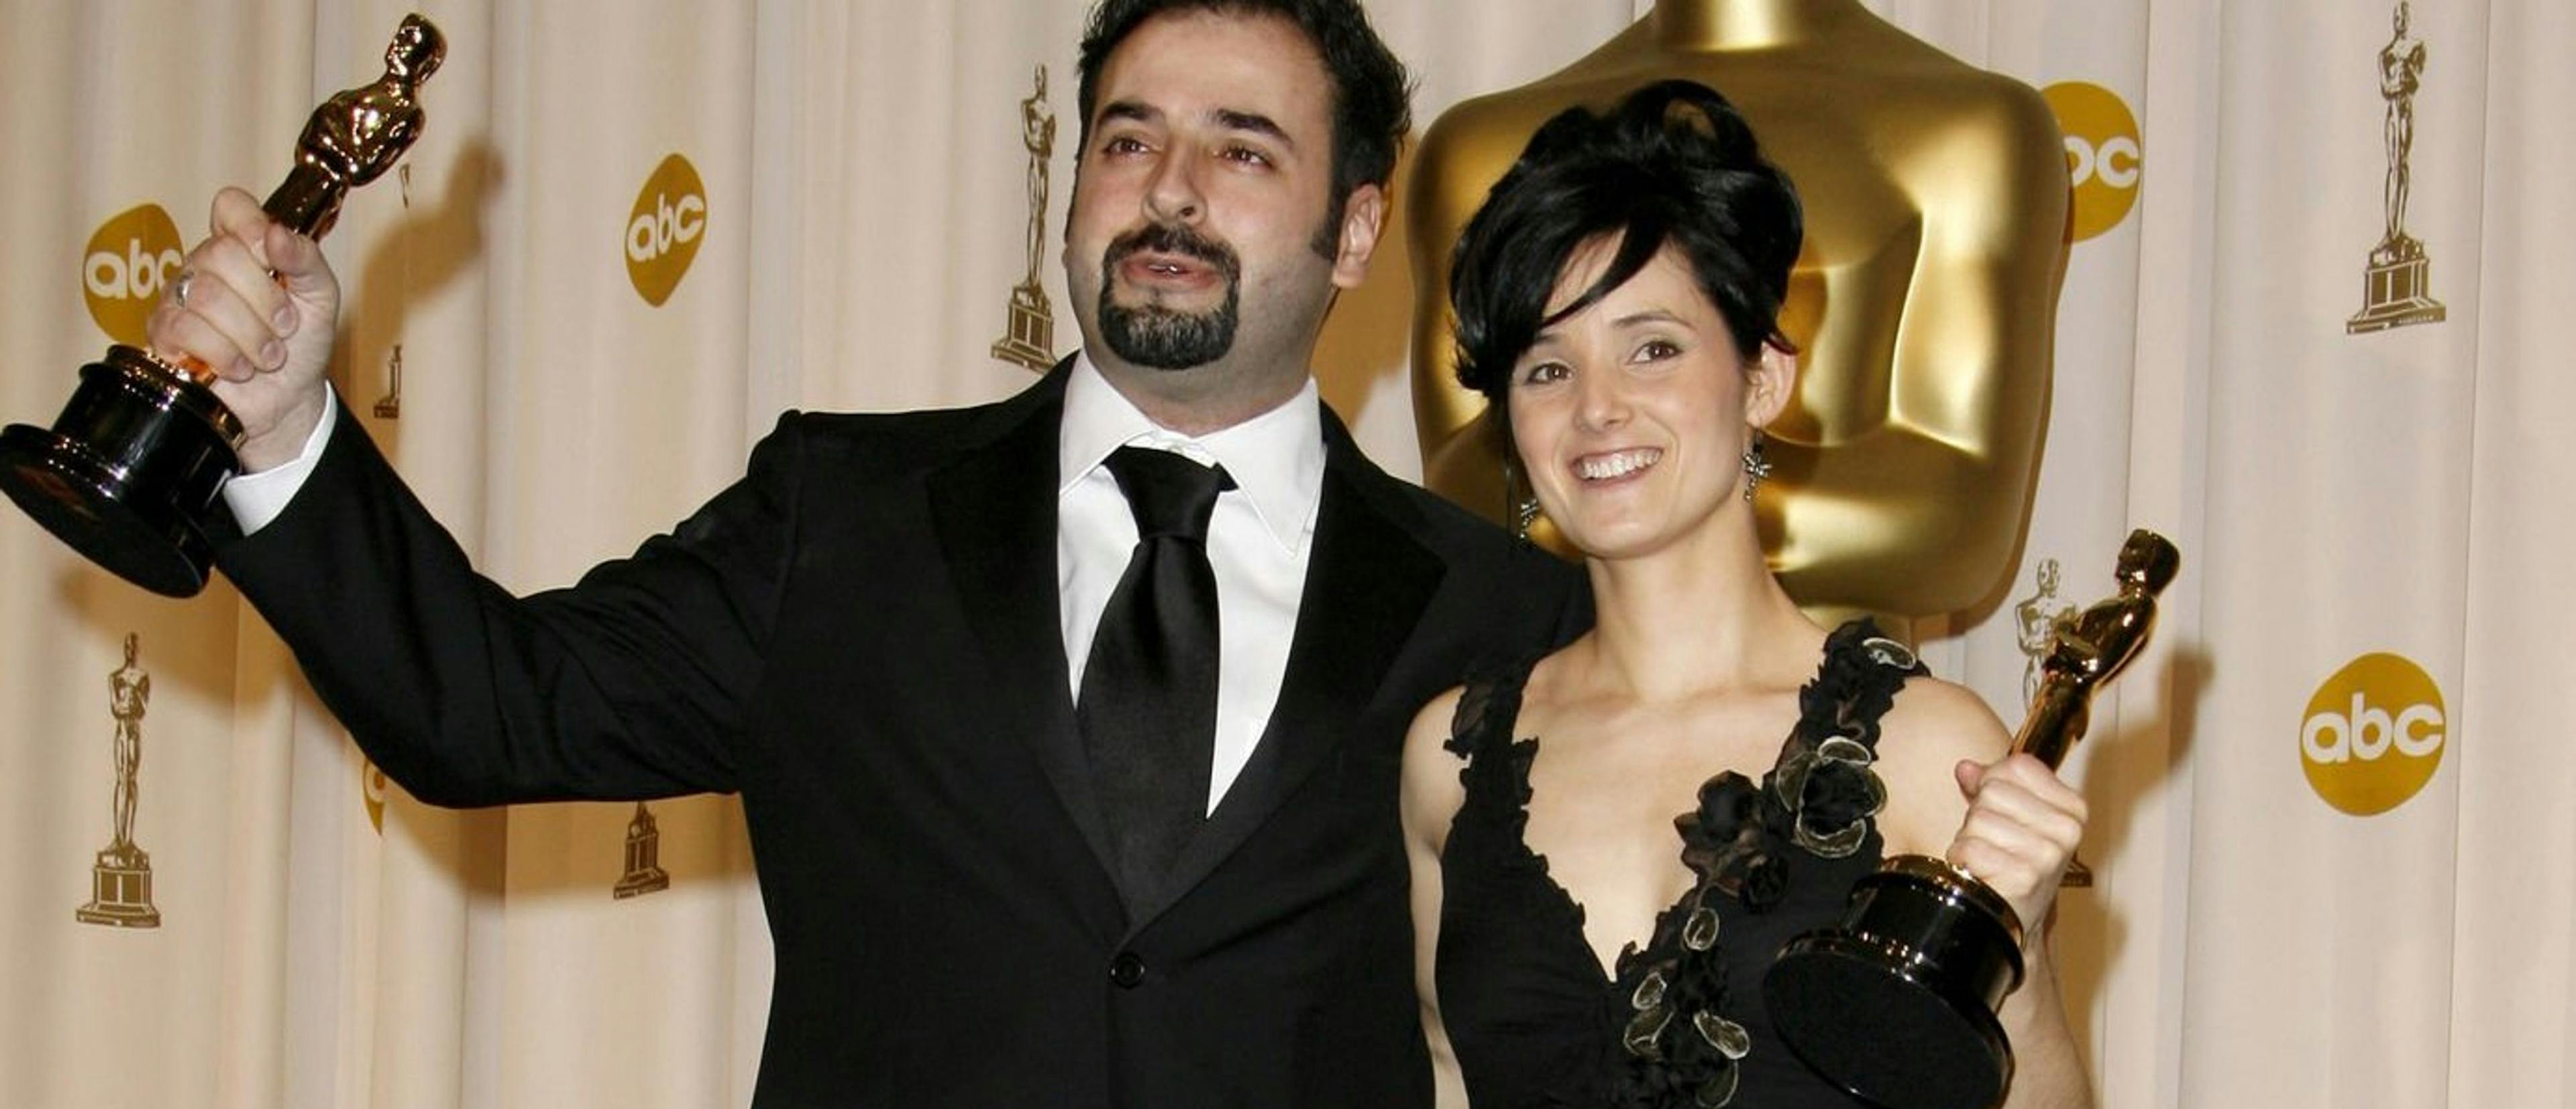 David Martí y Montse Ribé posan con su Oscar a Mejor Maquillaje y Peluquería por 'El laberinto del fauno' en 2007